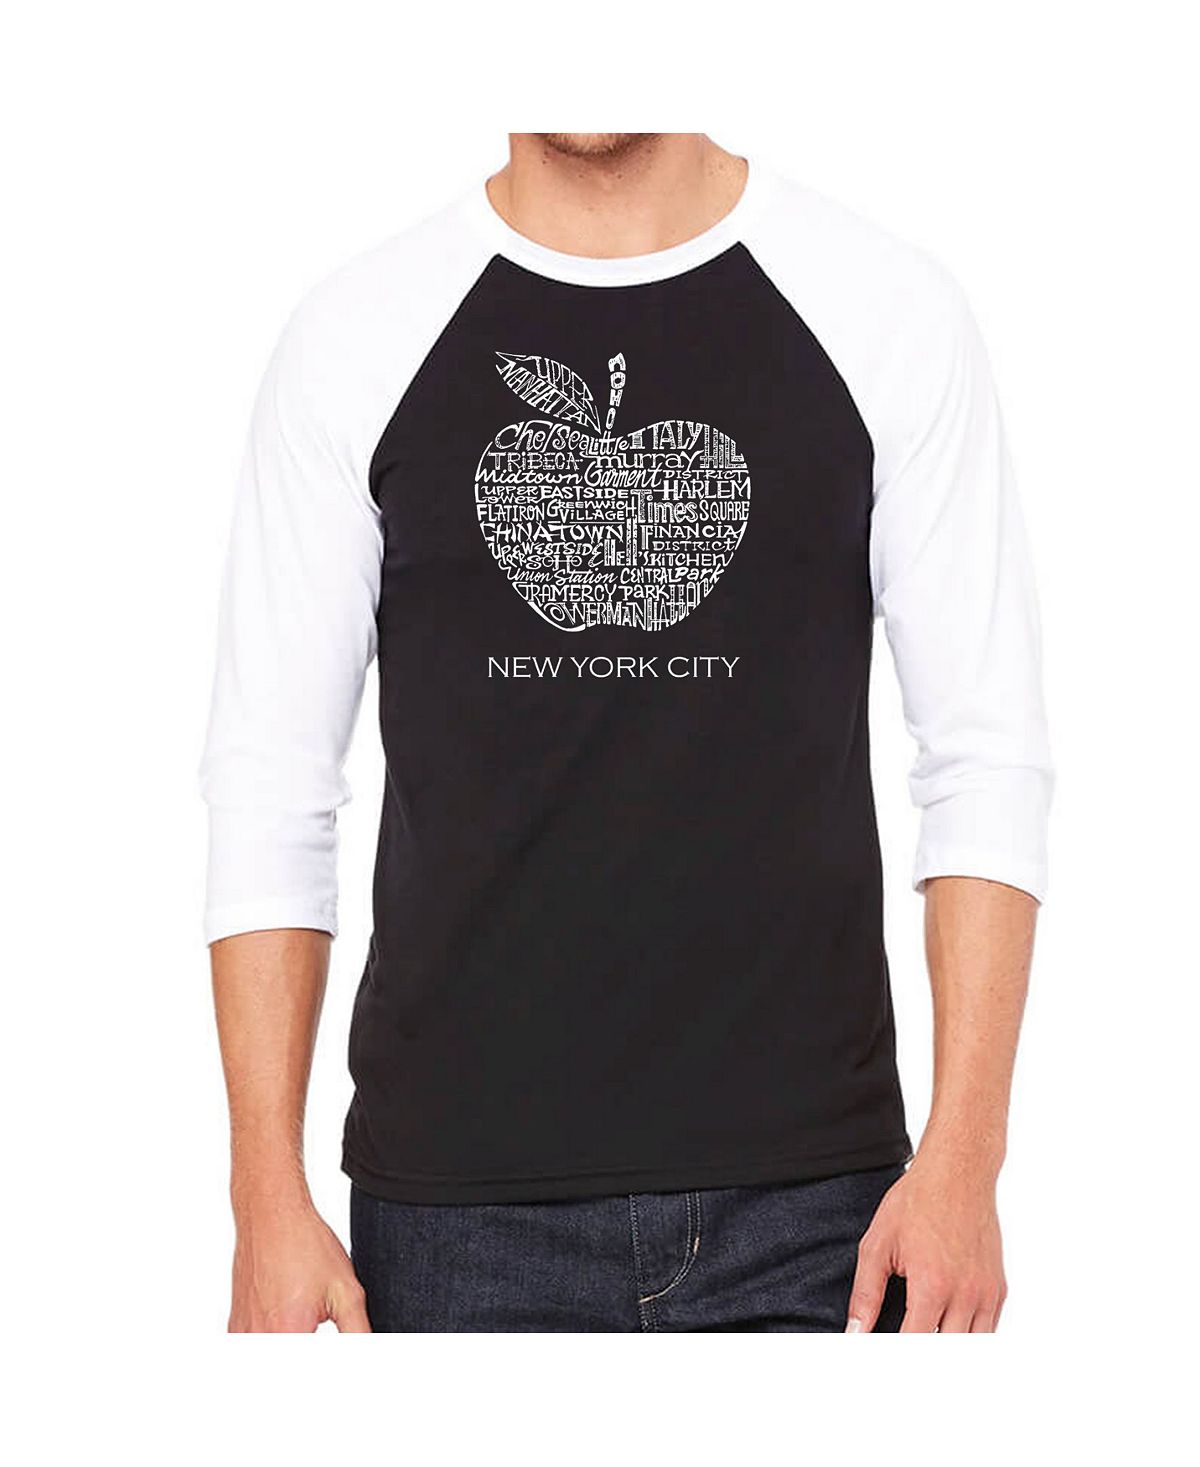 Мужская футболка с надписью reglan и надписью neighborhoods in new york city LA Pop Art, черный